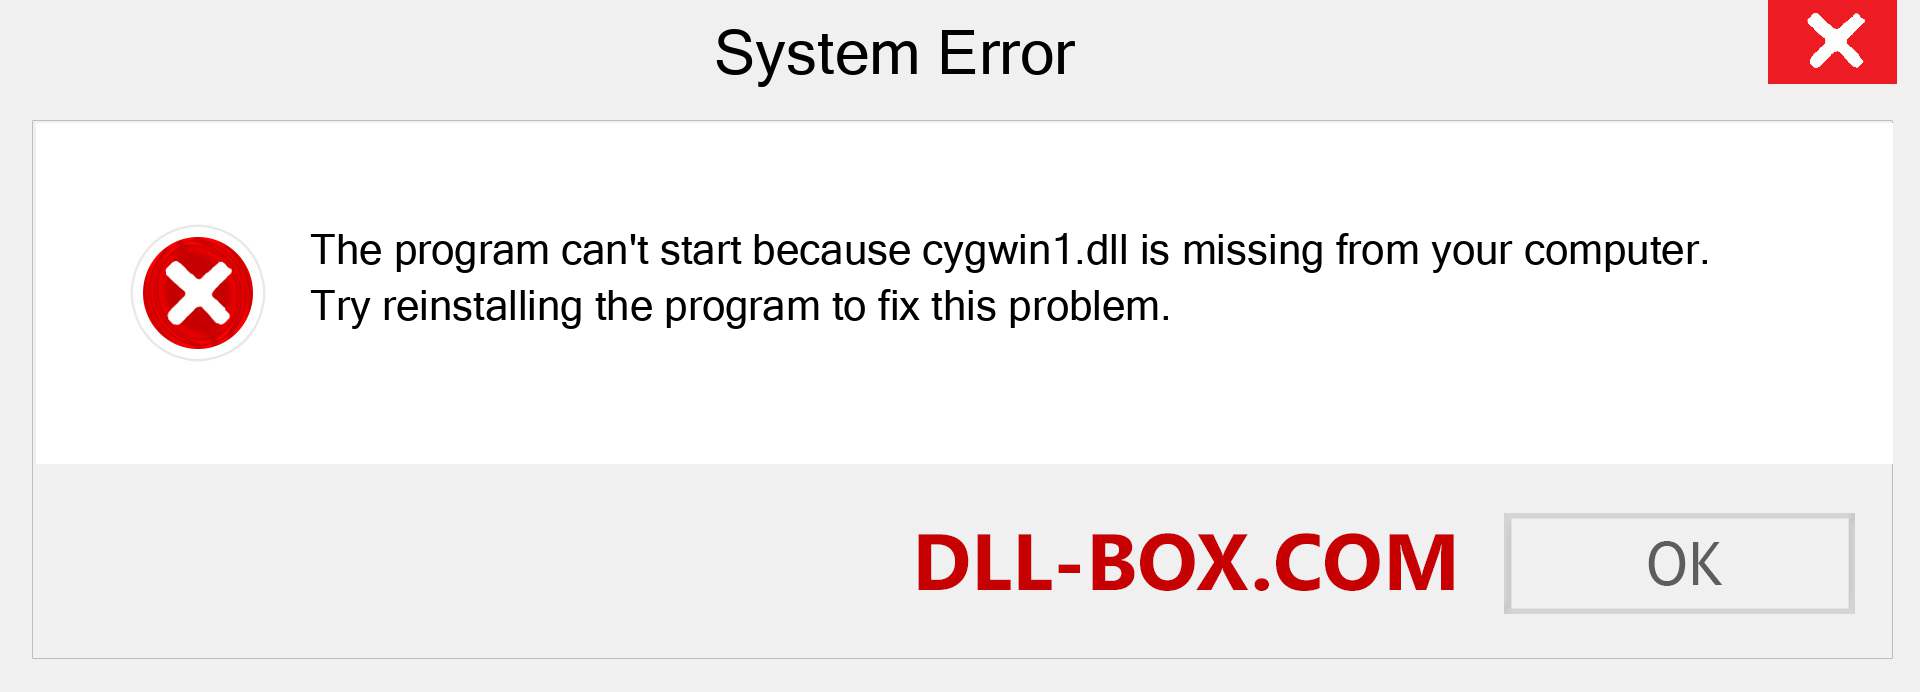 no se pudo comenzar a construir porque no se encontró cygwin1.dll